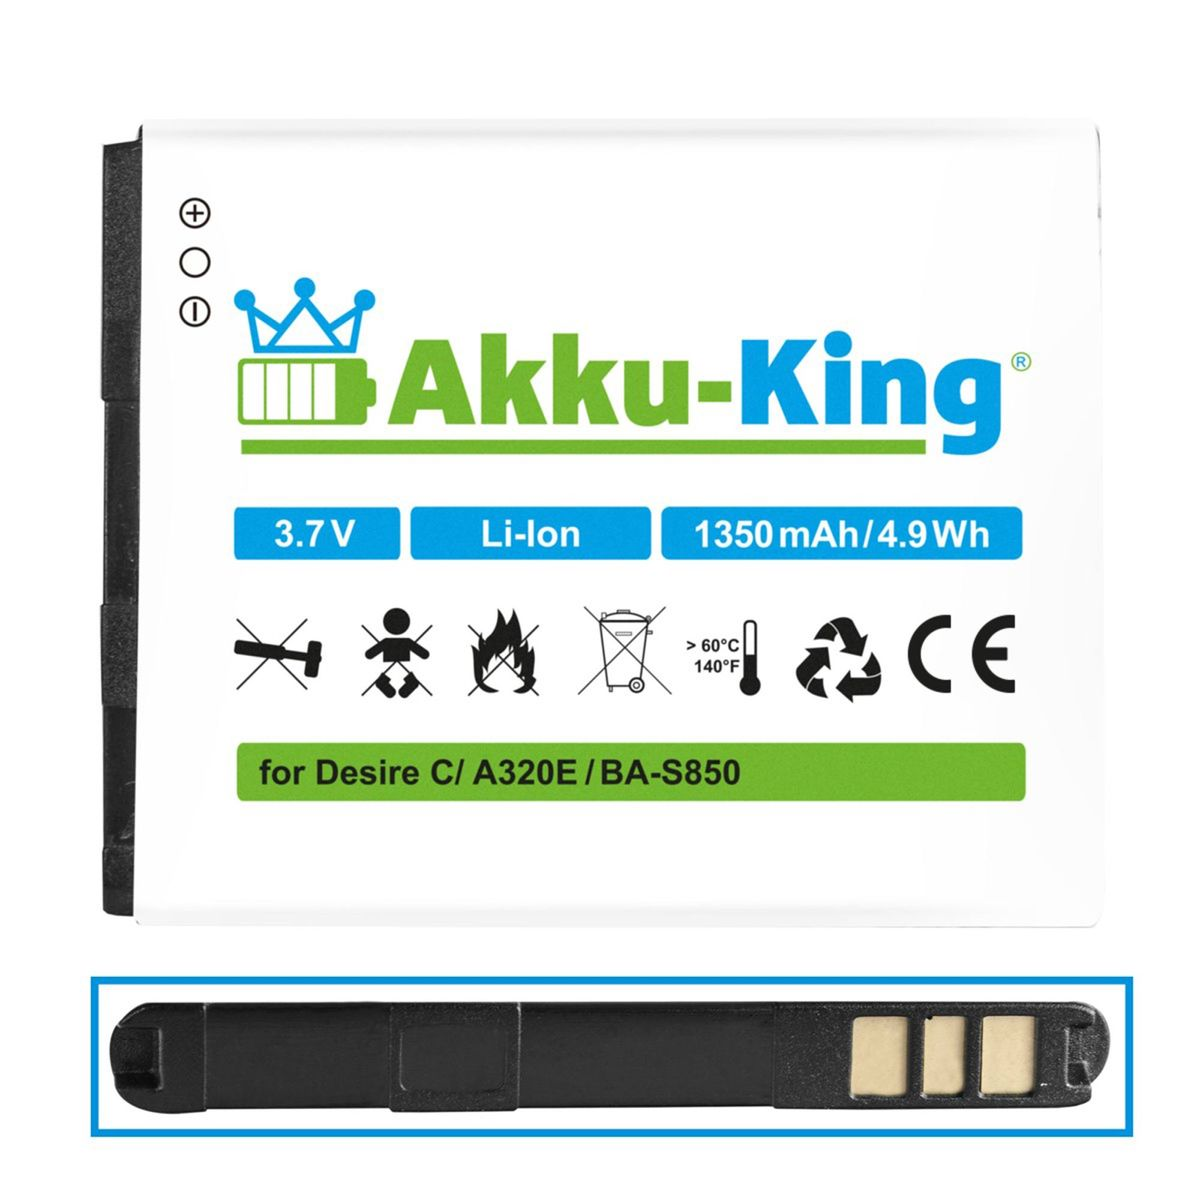 AKKU-KING Akku kompatibel 1350mAh mit 3.7 BA-S850 HTC Li-Ion Handy-Akku, Volt